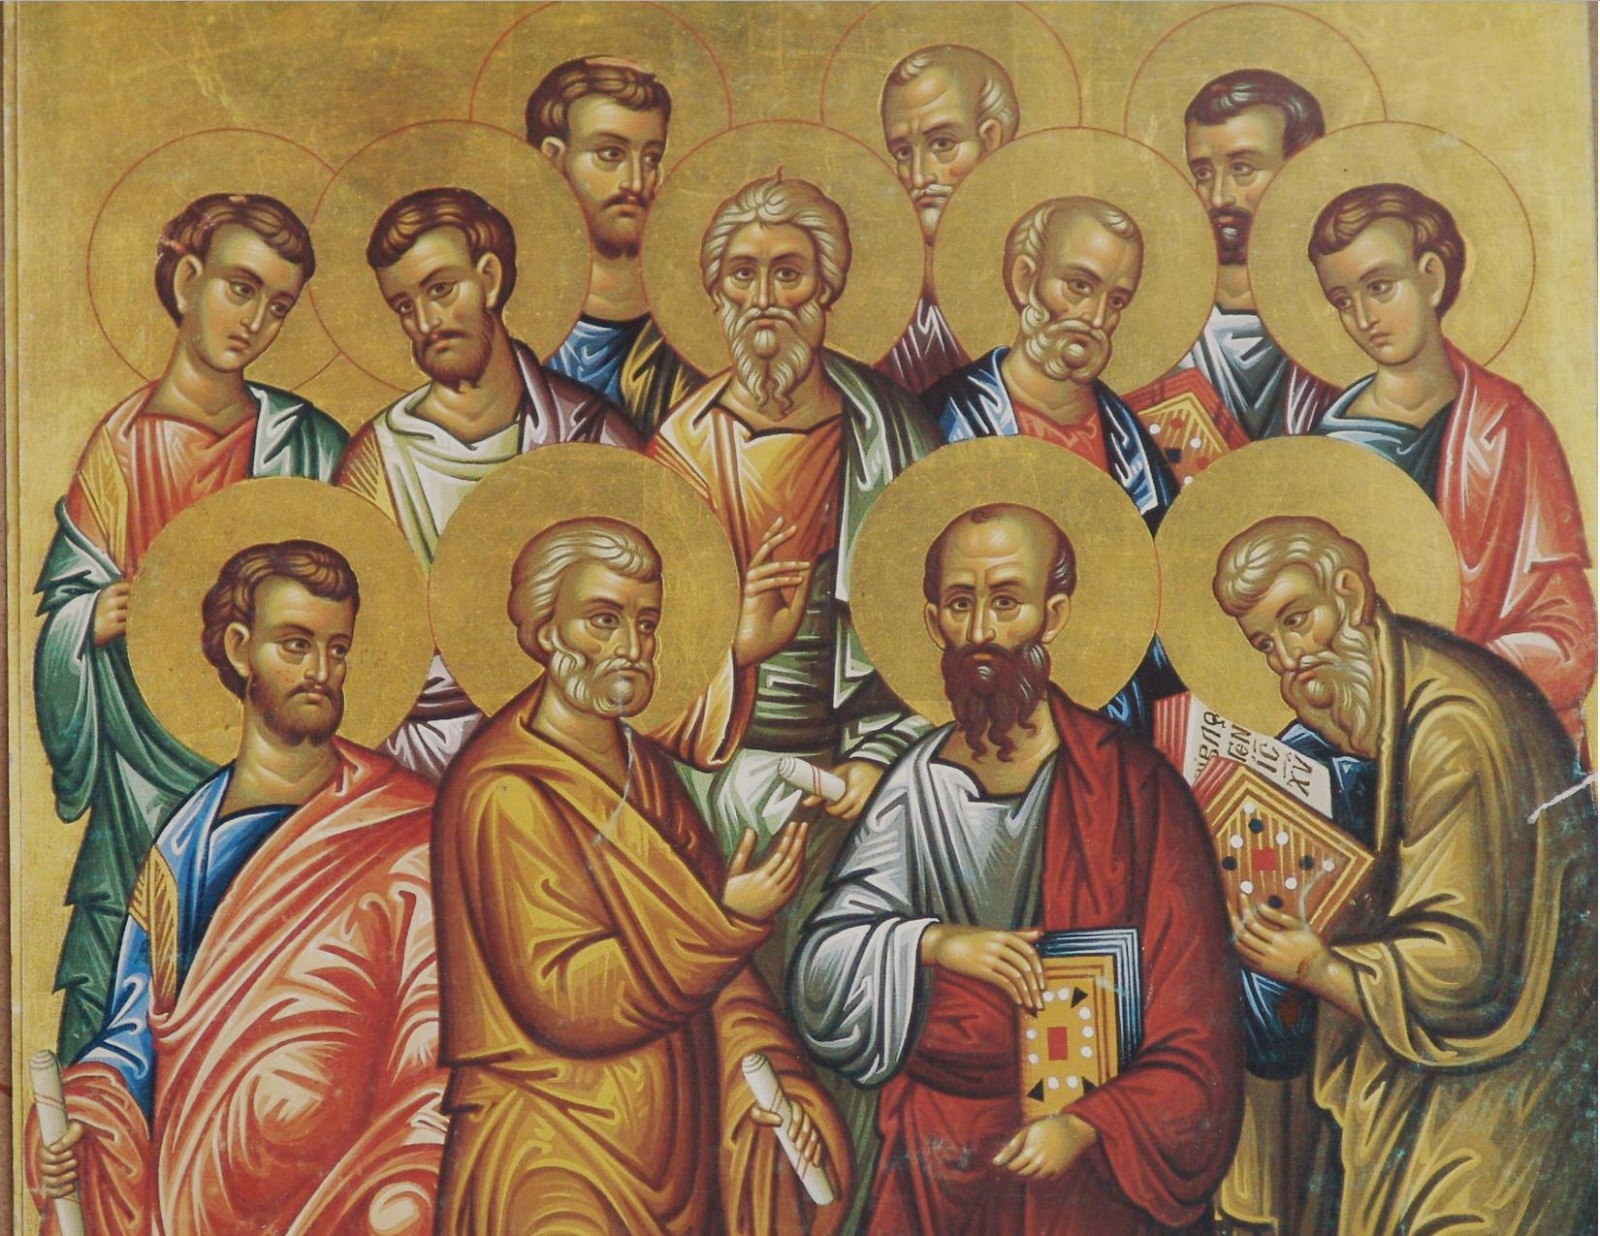 Святой предок 9. Икона Христос и 12 апостолов. Ученики Иисуса Христа 12 апостолов.